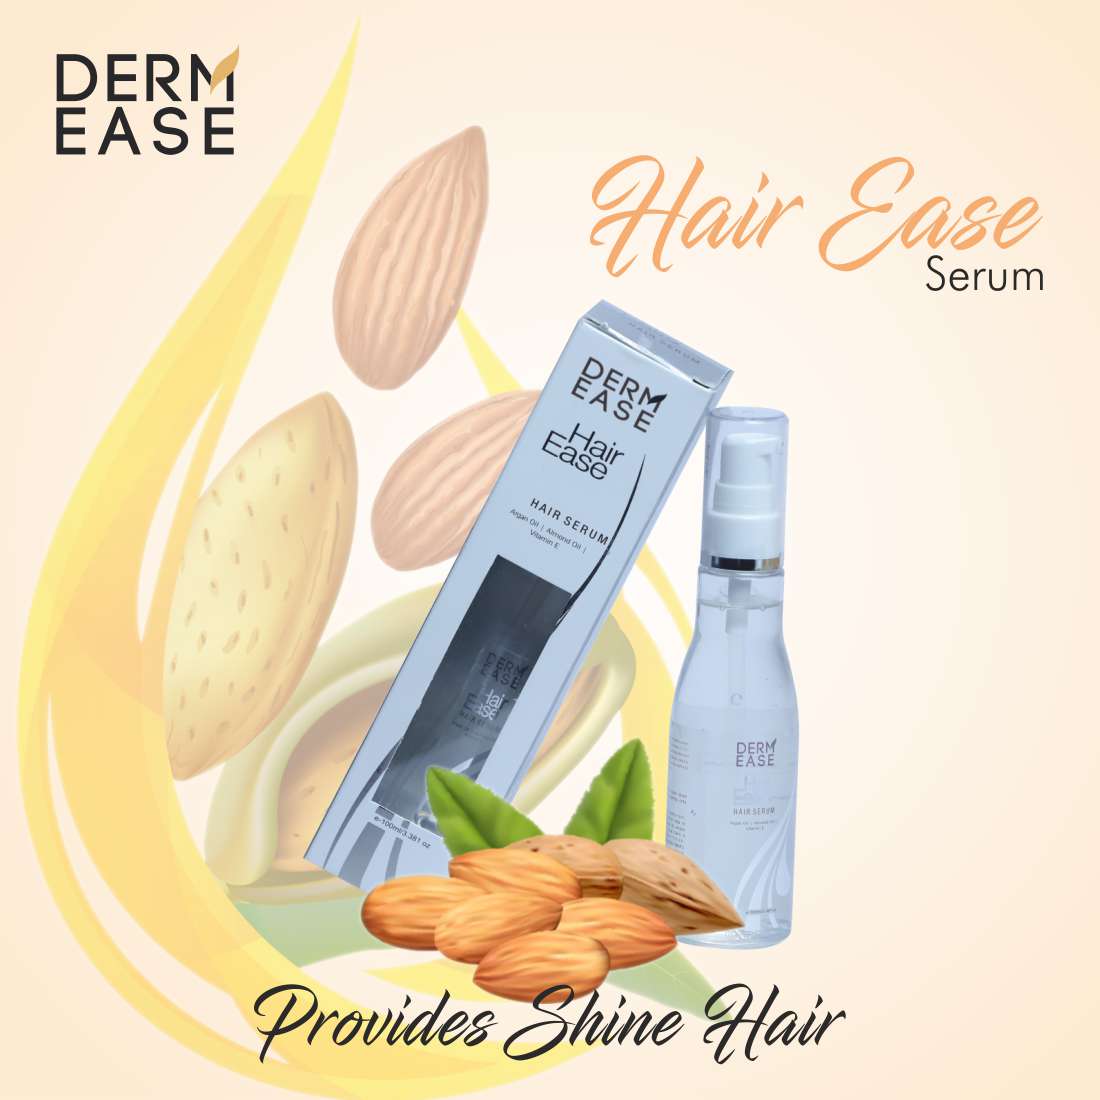 DERM EASE Hair Ease Hair Serum Combo